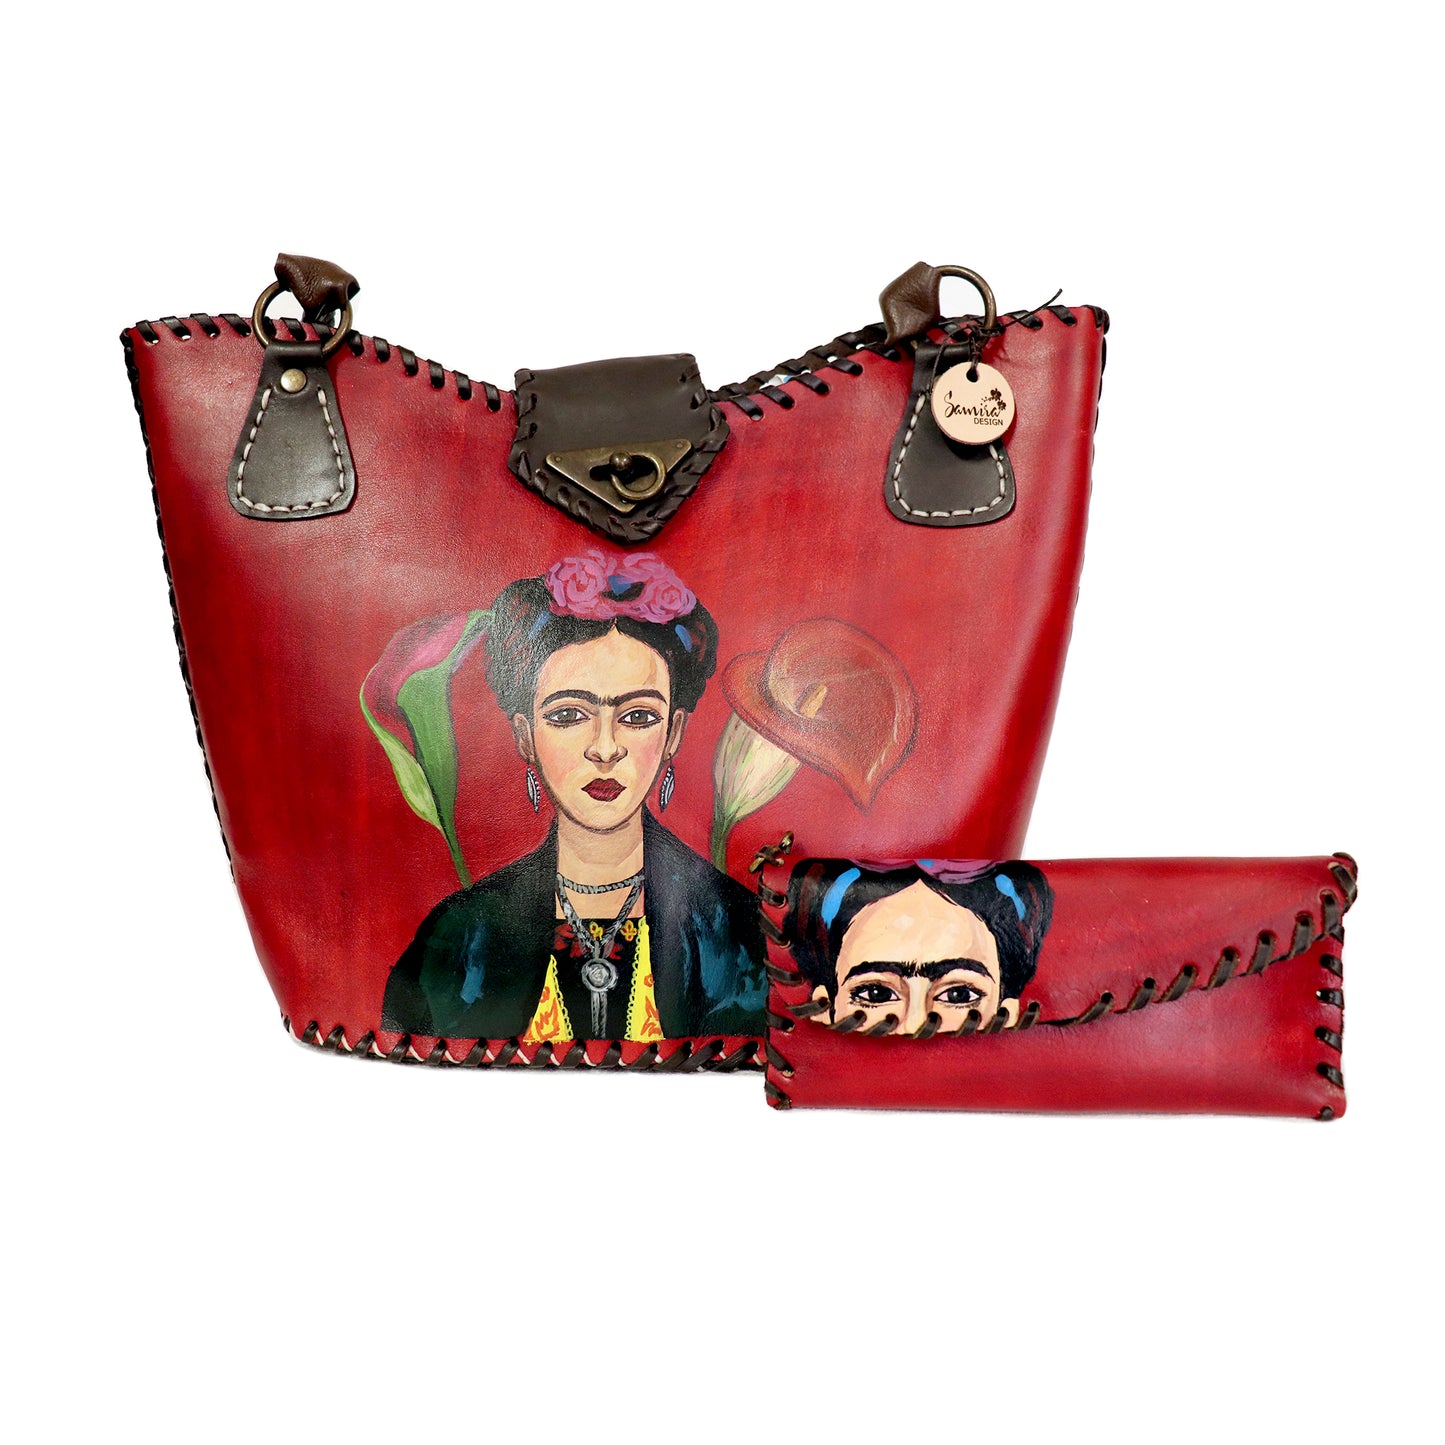 Frida Kahlo - Front Portrait Red Tote Bag and Clutch set